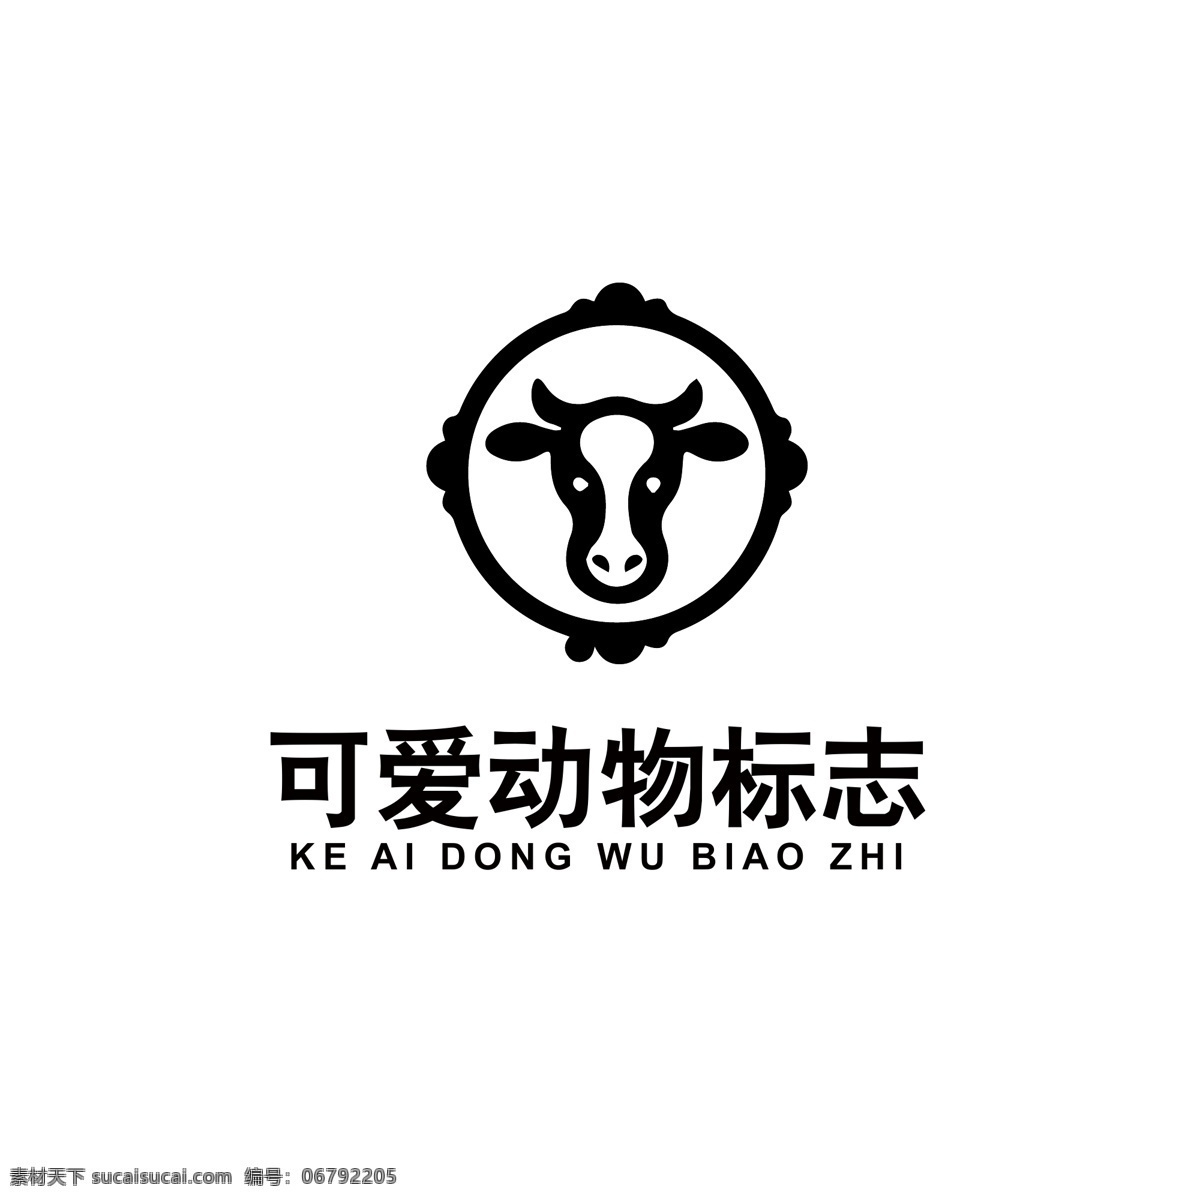 可爱 动物 logo 动物logo 小牛logo 可爱卡通牛 简笔logo 牛头像 品牌logo logo设计 标识 标志 ai矢量